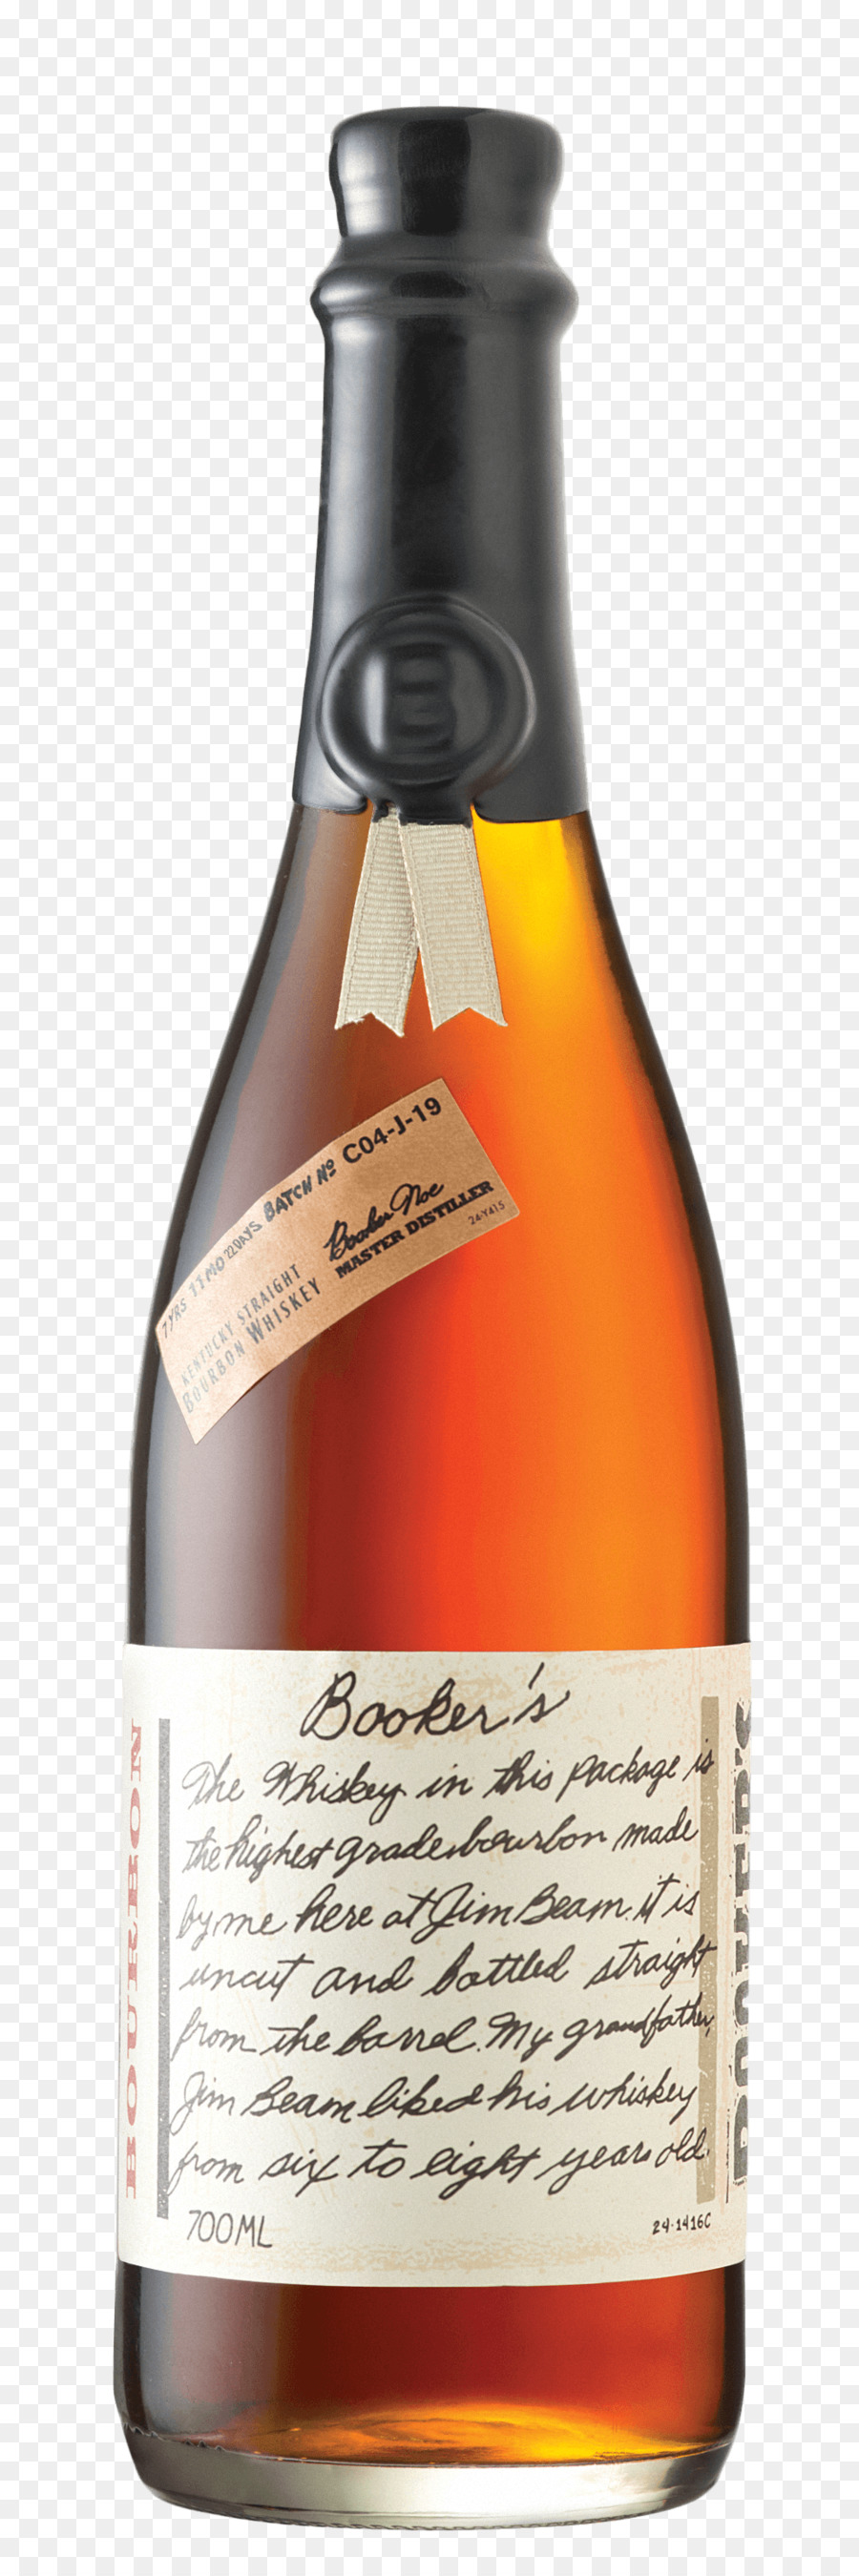 Booker 's Bourbon whiskey Basil Hayden' s-Destilliertes Getränk - trinken